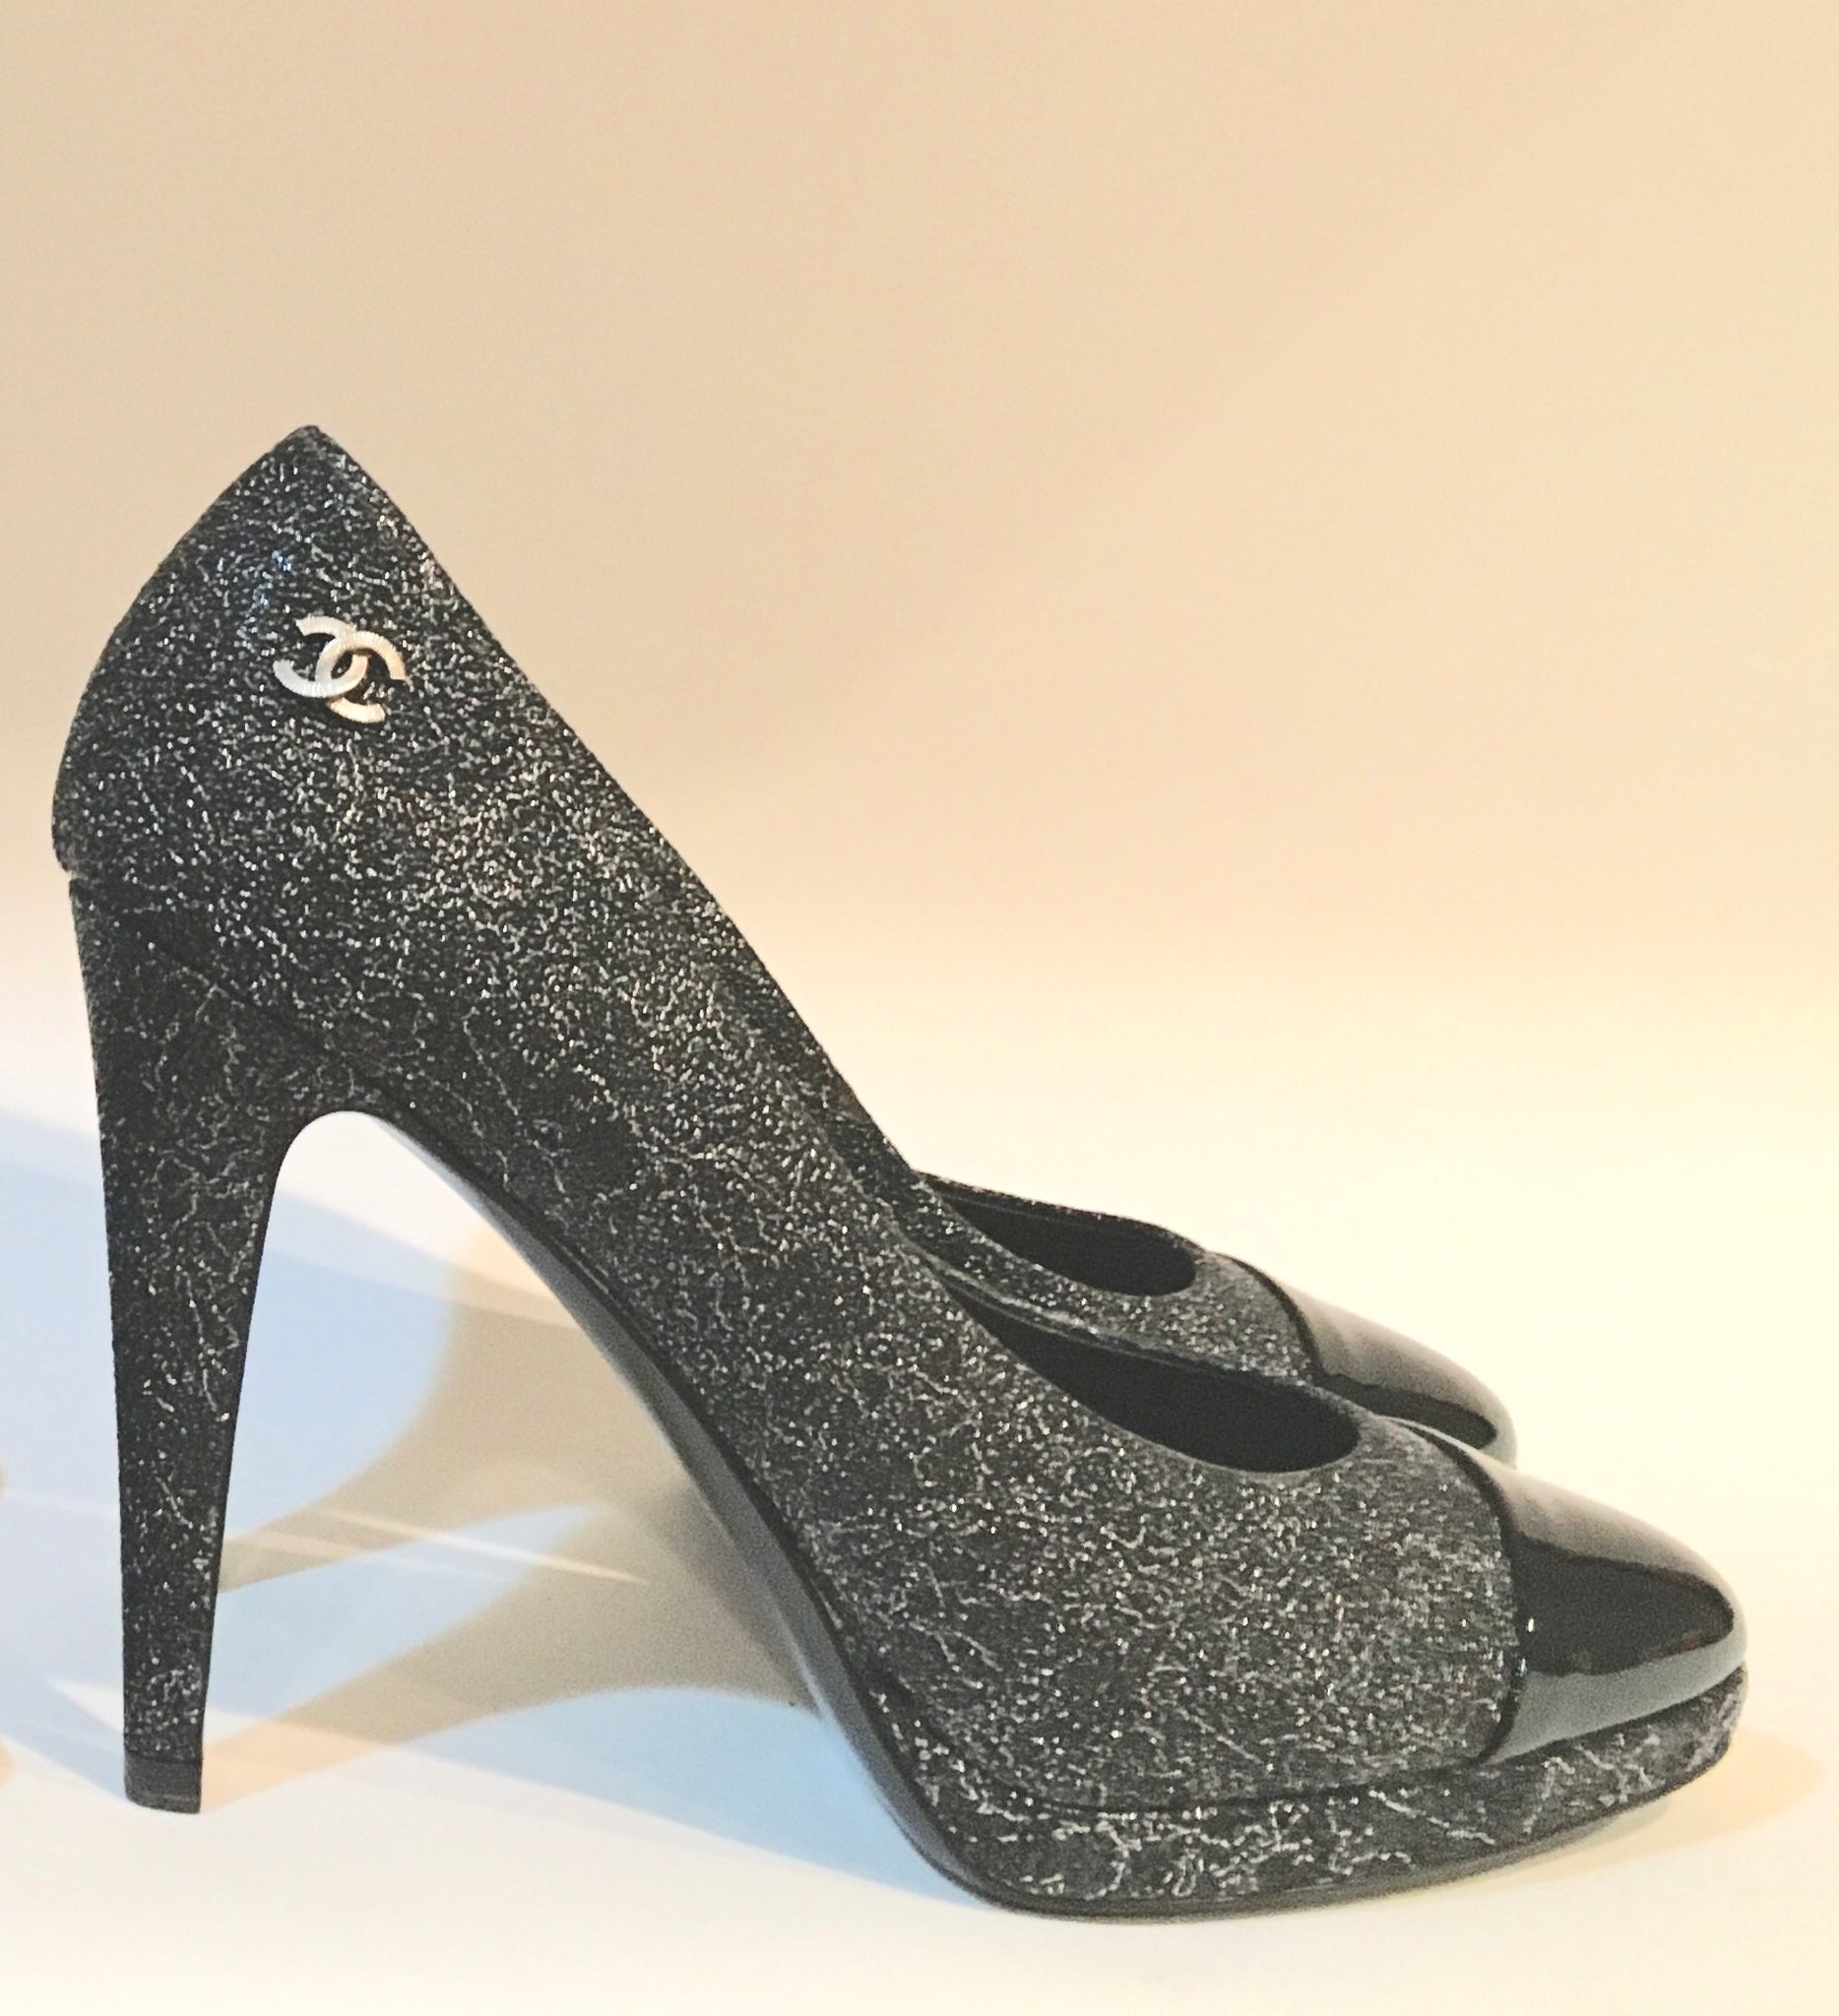 CHANEL Clear & Silver Logo Platform Slingback sandals heels 40.5 10.5